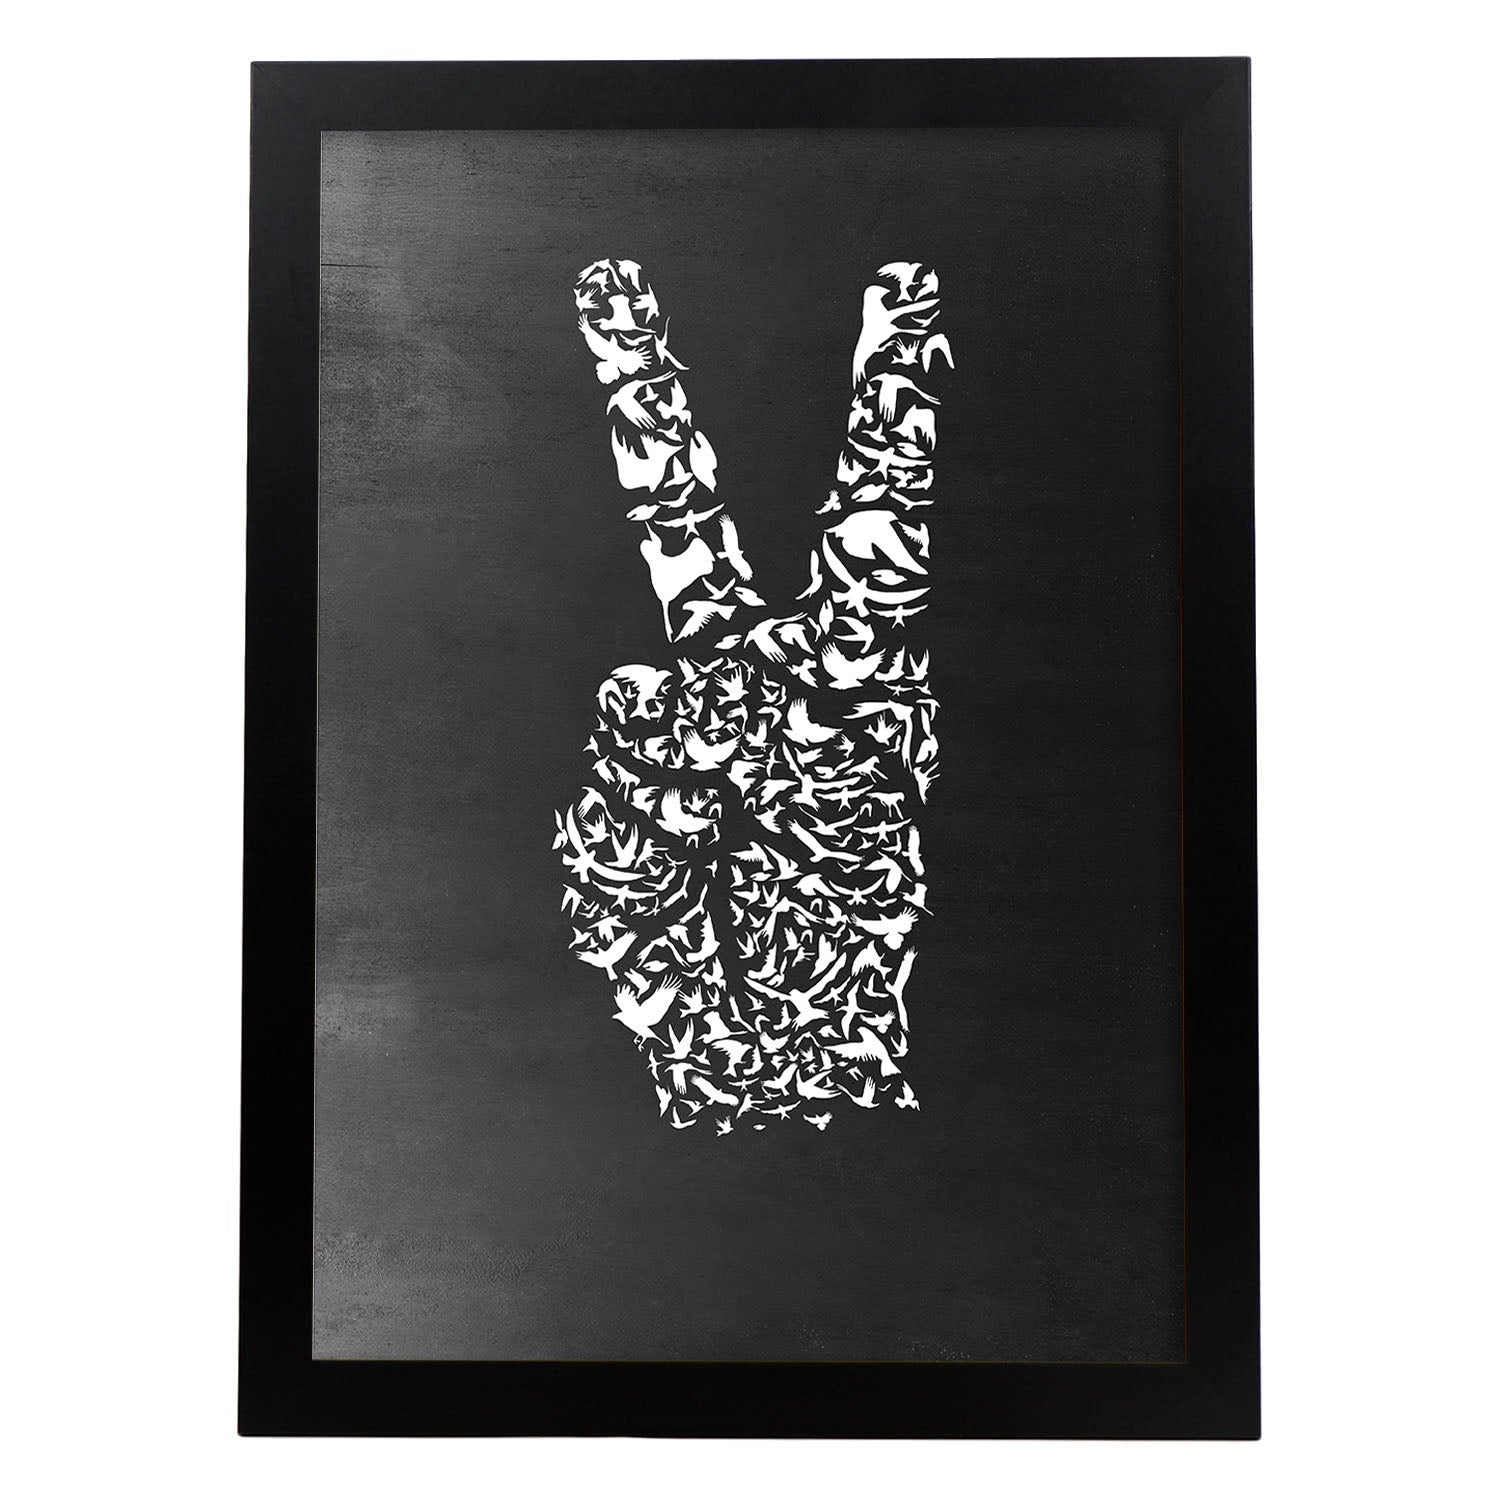 Disegno di simbolo di pace 3d